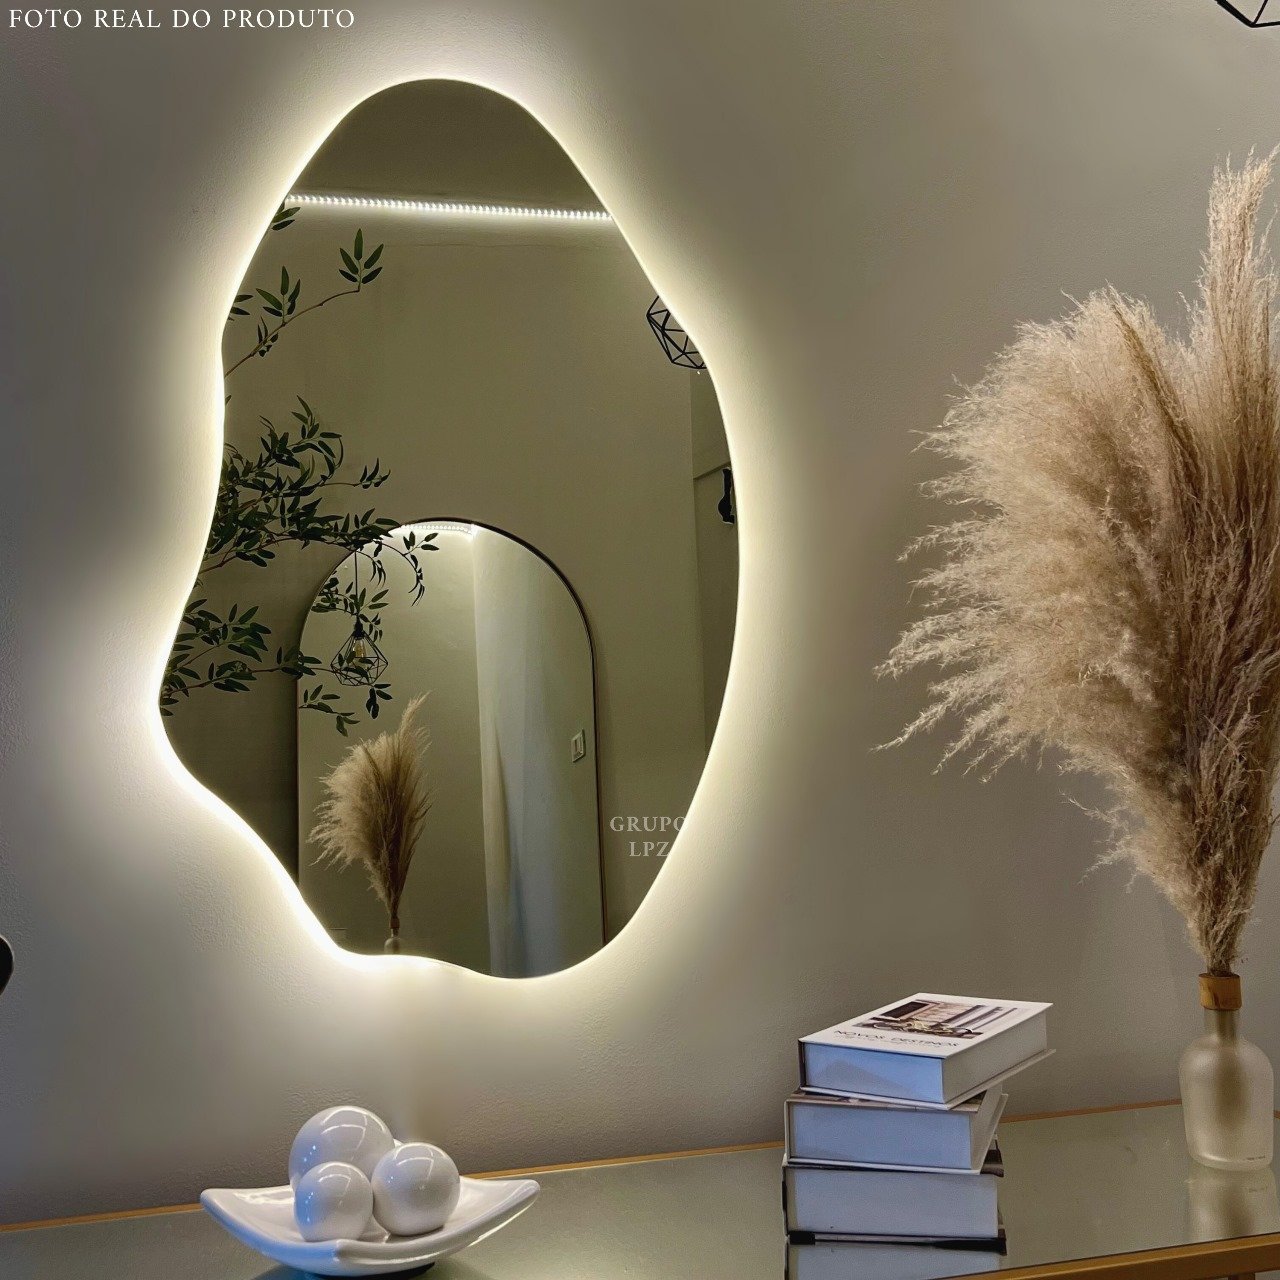 Espelho Grande Orgânico Lapidado Decorativo Sala Hall Parede 70x50 Cm Moderno com Led 3000k - 1